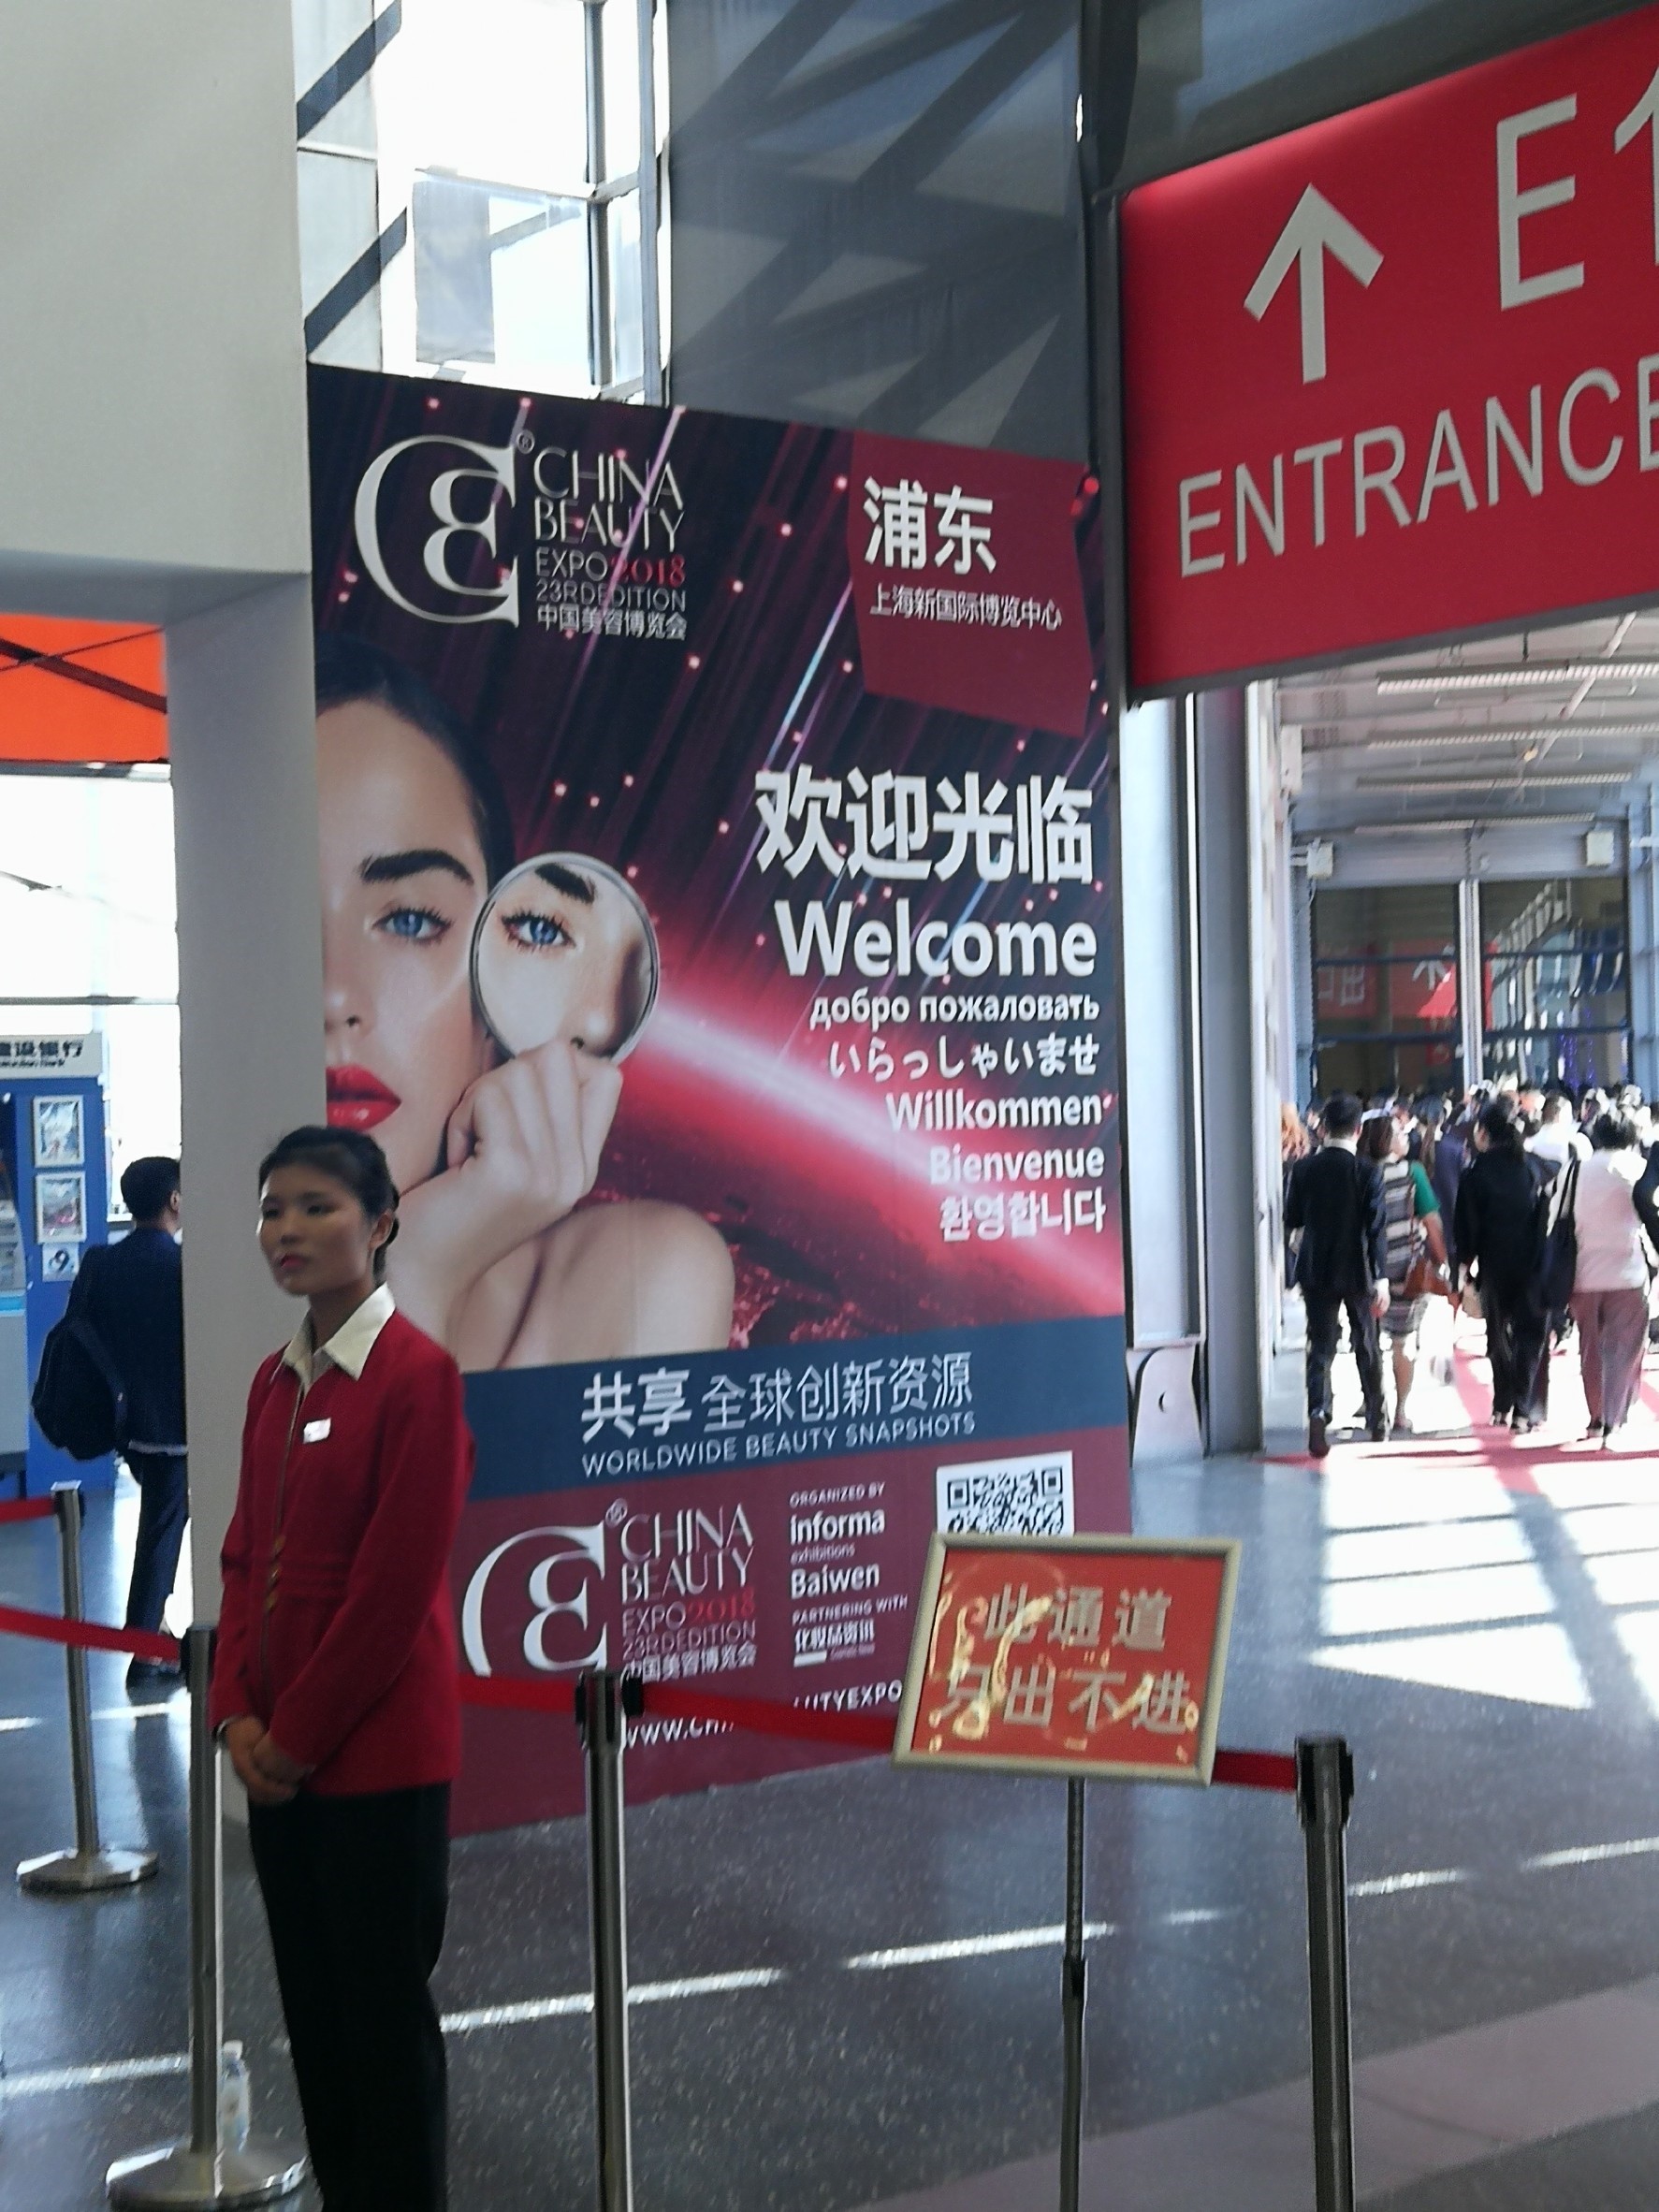 China Beauty Expo Shanghai 2018